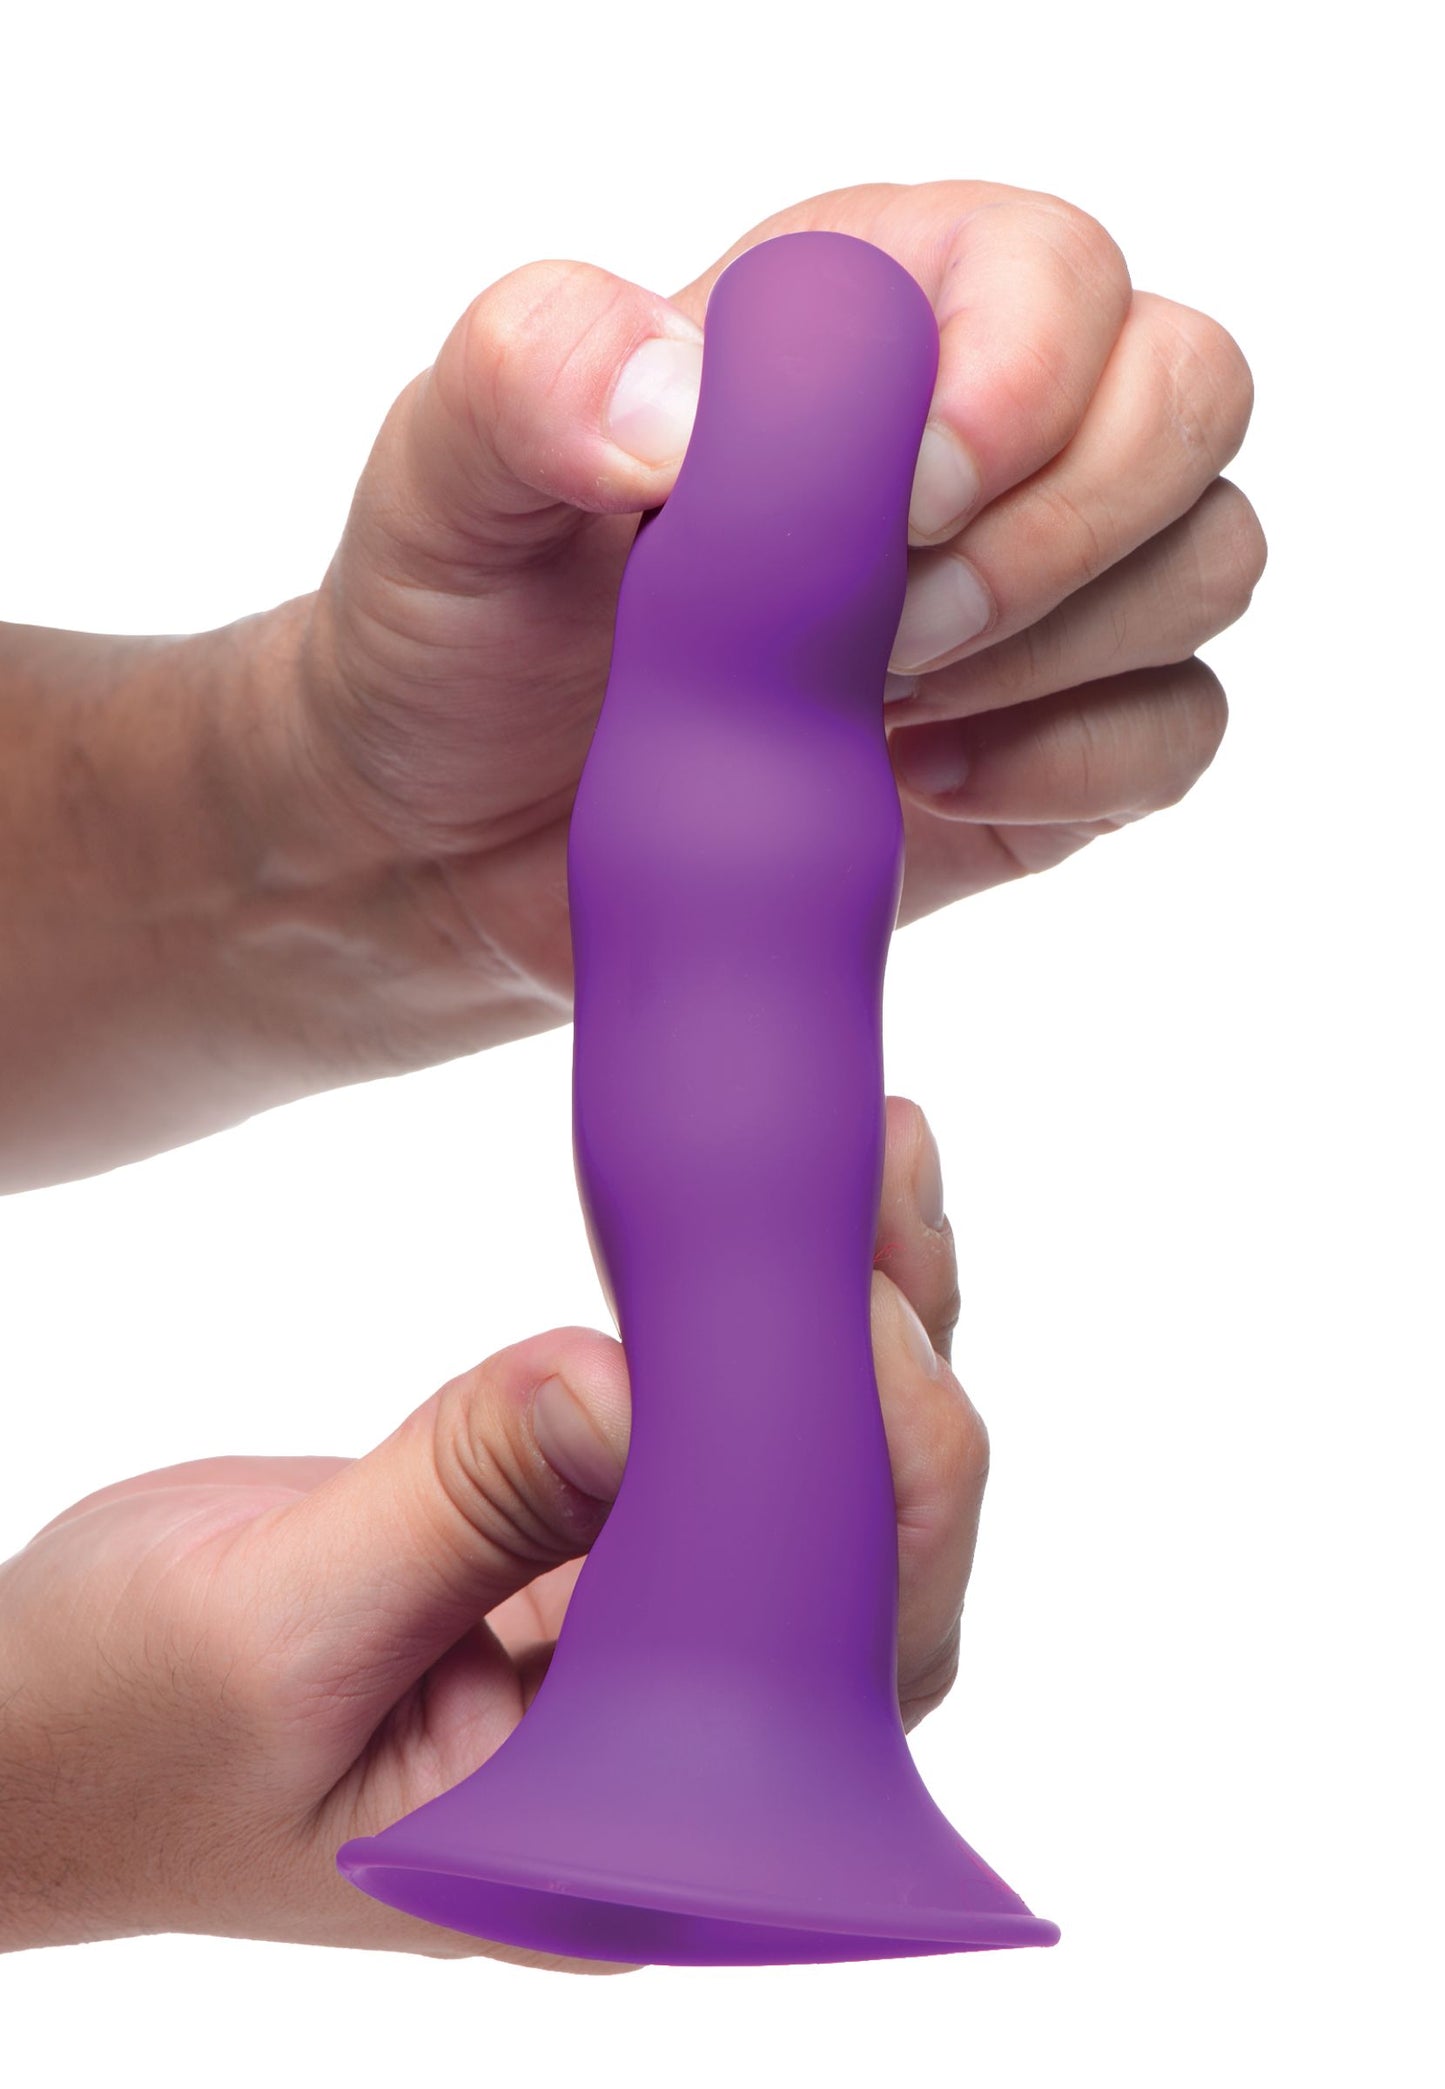 Squeezable Wavy Dildo - Purple - UABDSM